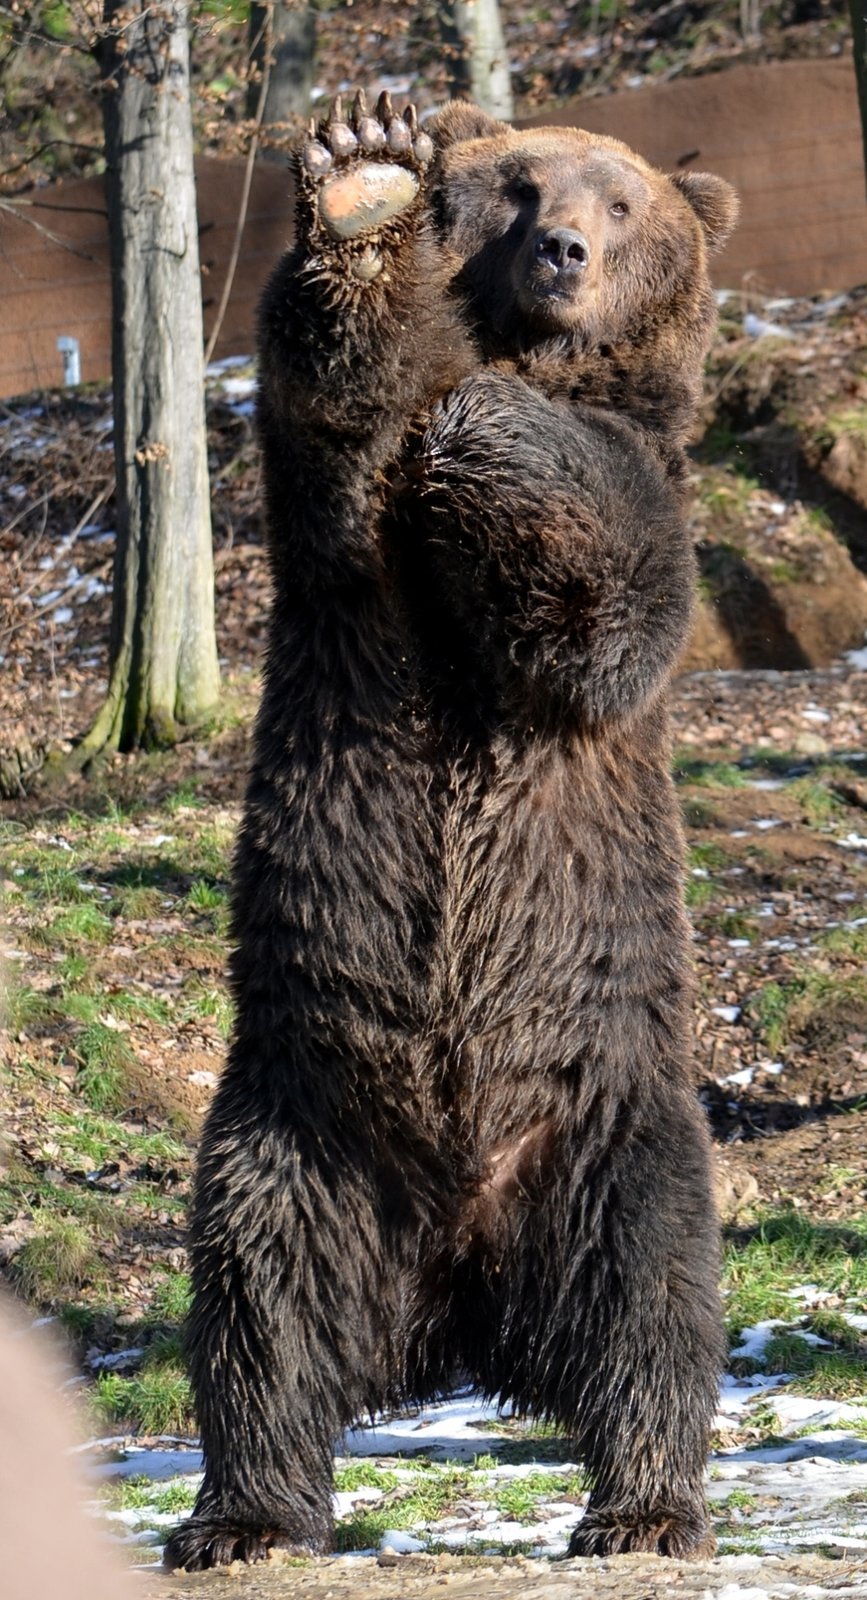 Tak vám hezky zamávám, jako by říkal pohled medvědího táty Jelizara z brněnské zoo, který je rozený bavič.